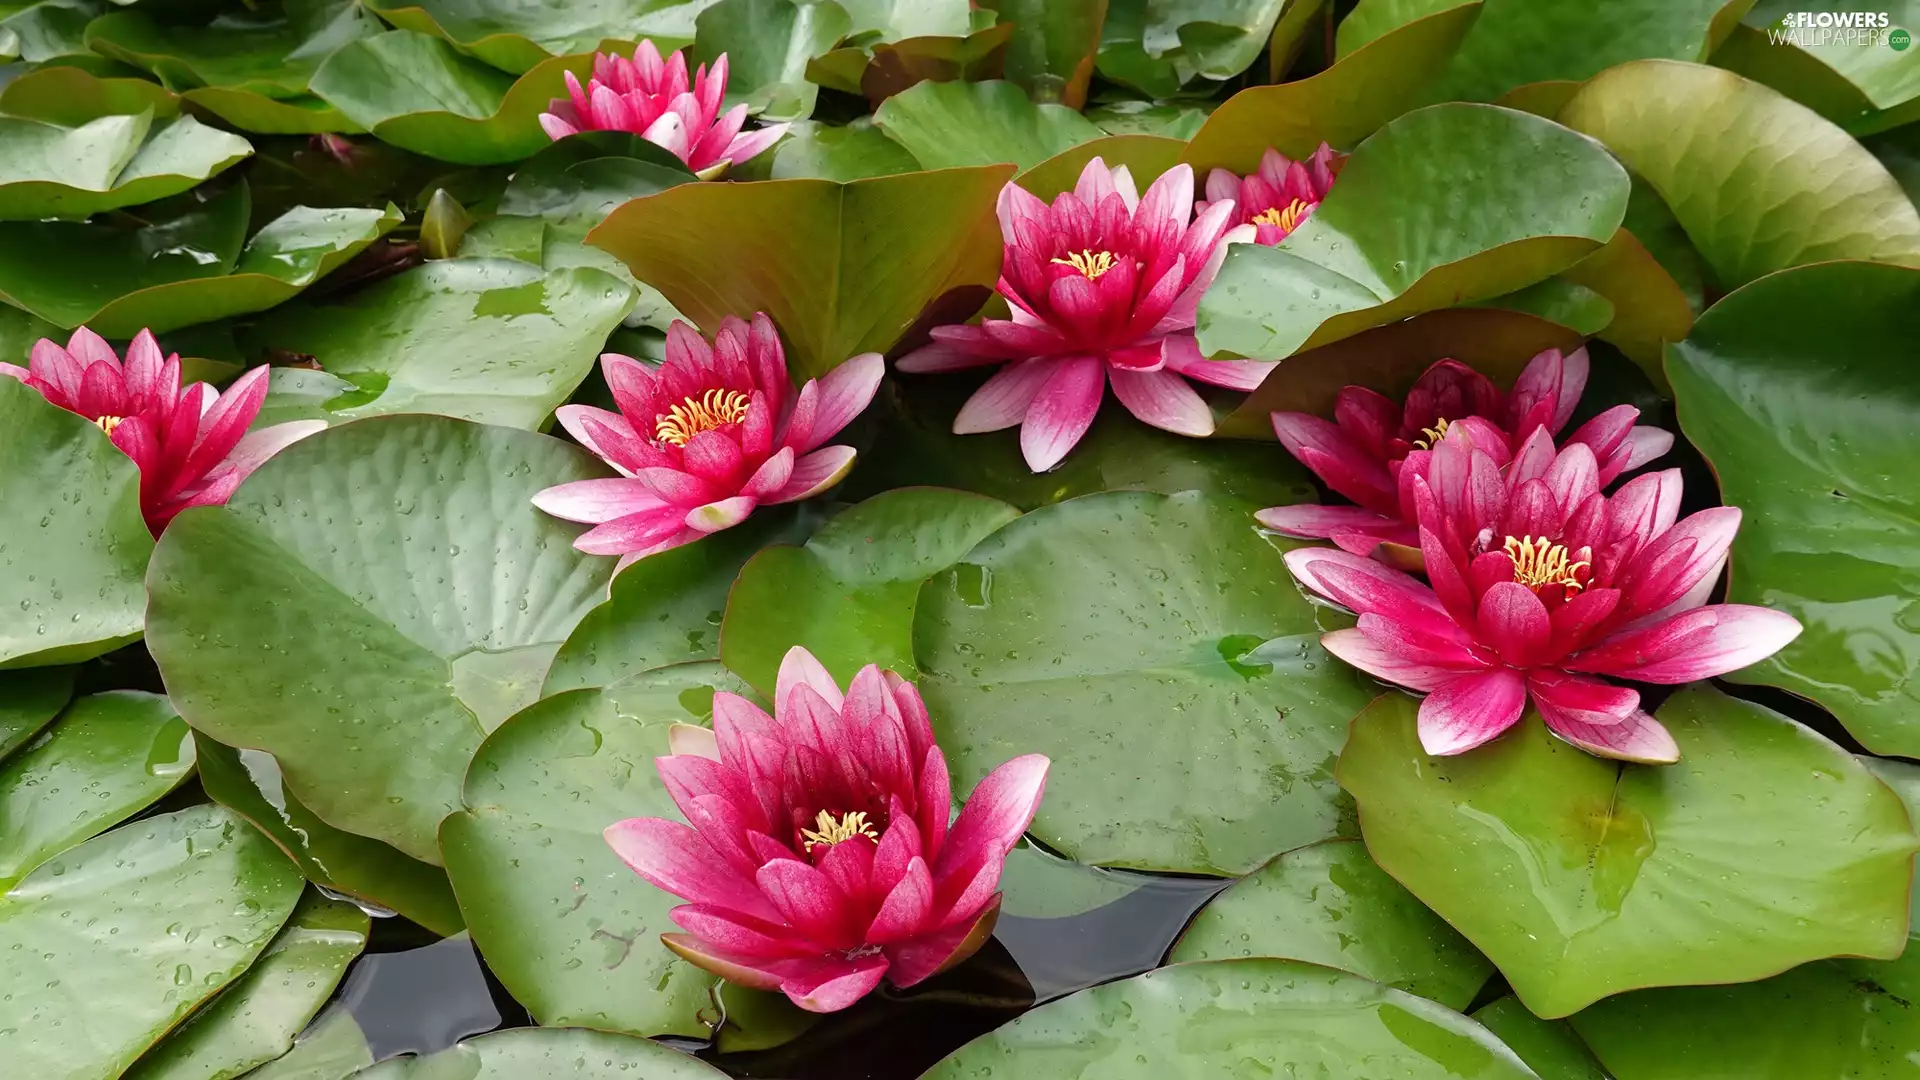 Water lilies, Flowers, Leaf